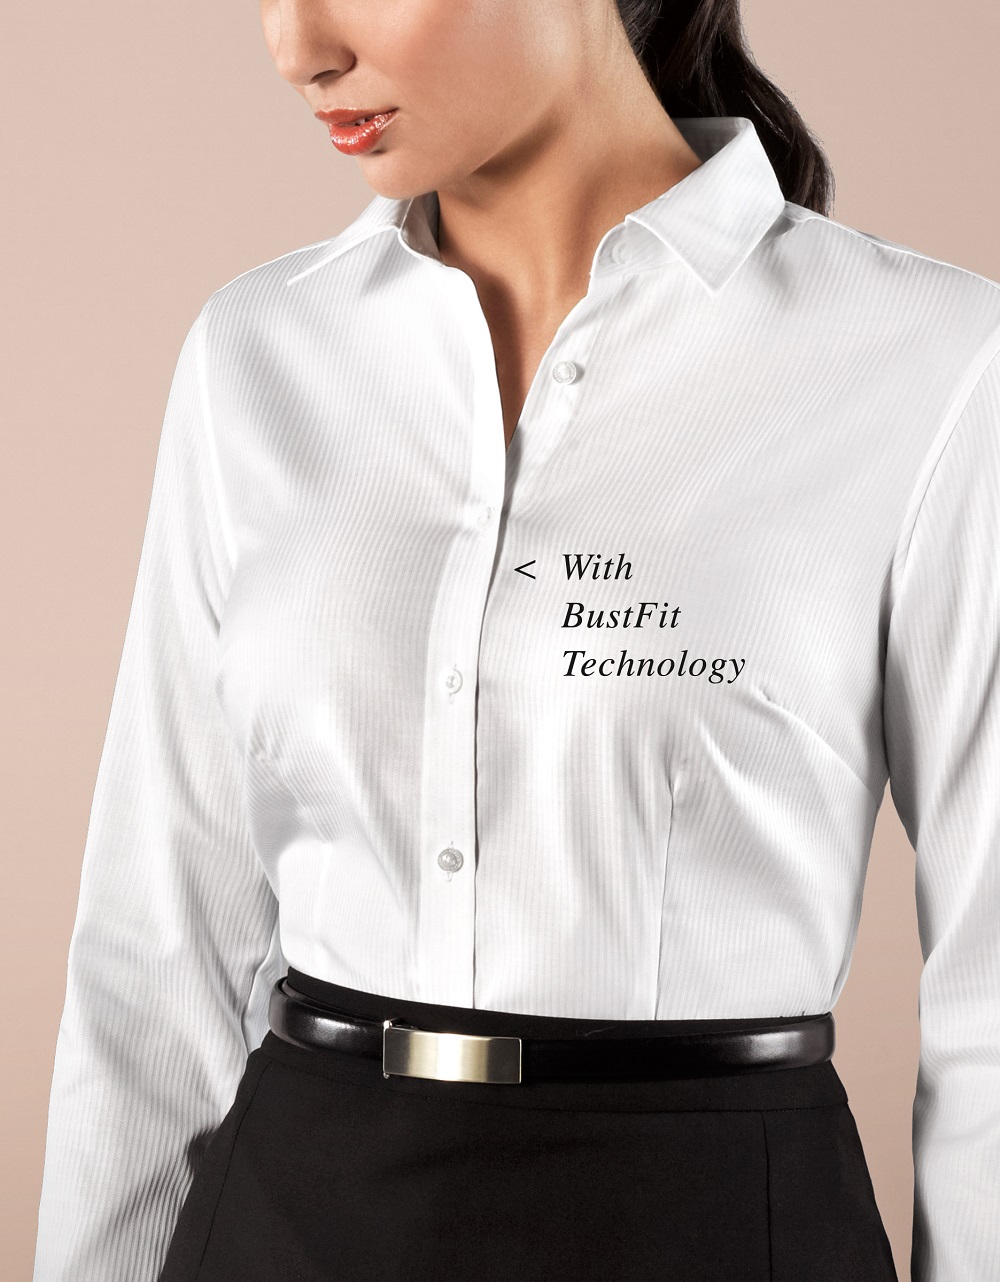 Women Business shirt size chart 2